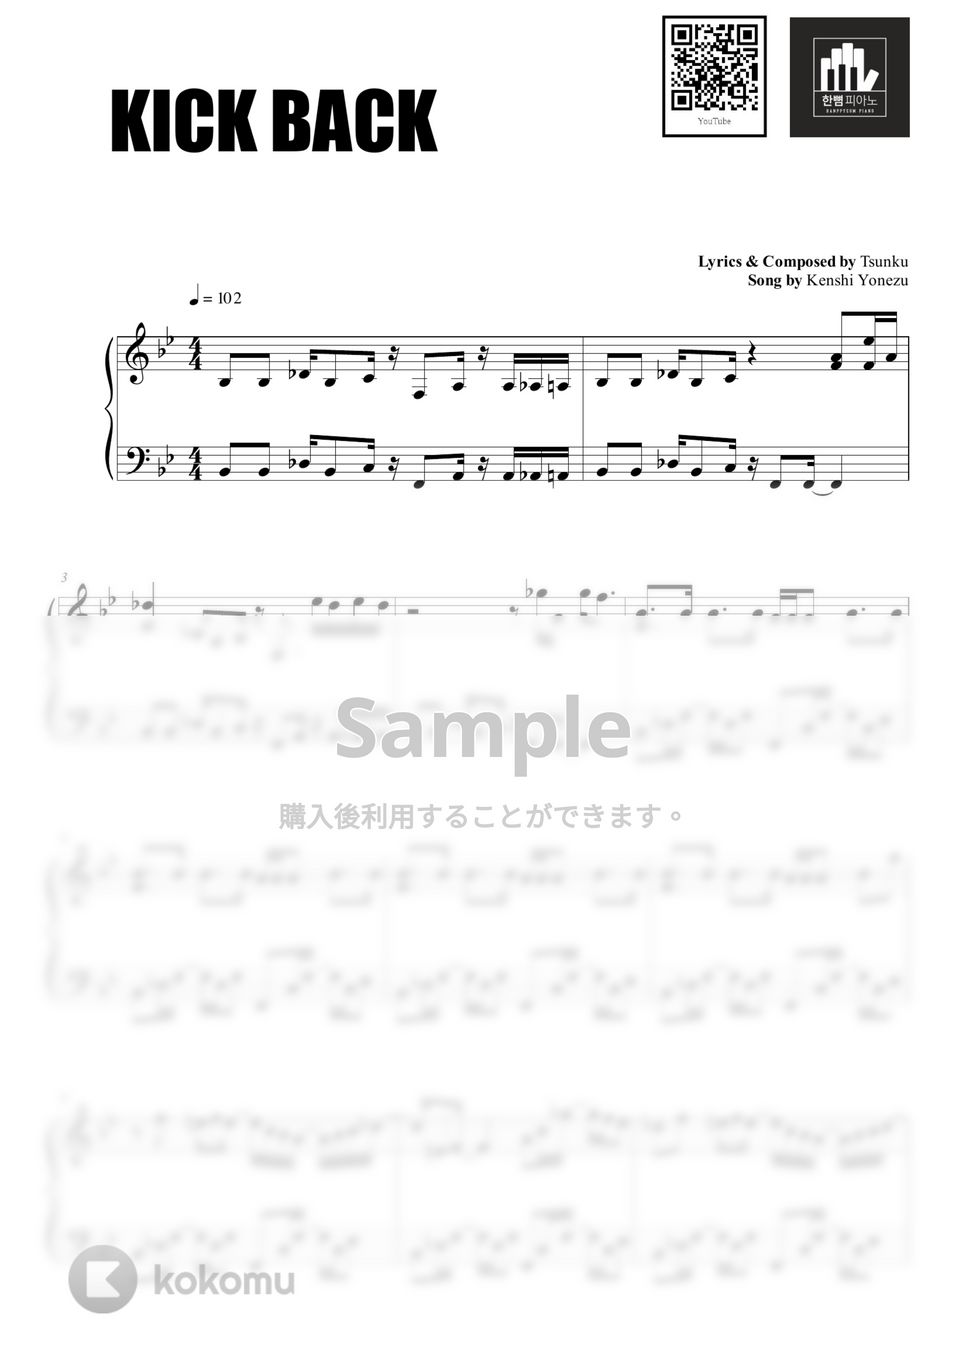 Kenshi Yonezu - KICK BACK (PIANO COVER) by HANPPYEOMPIANO